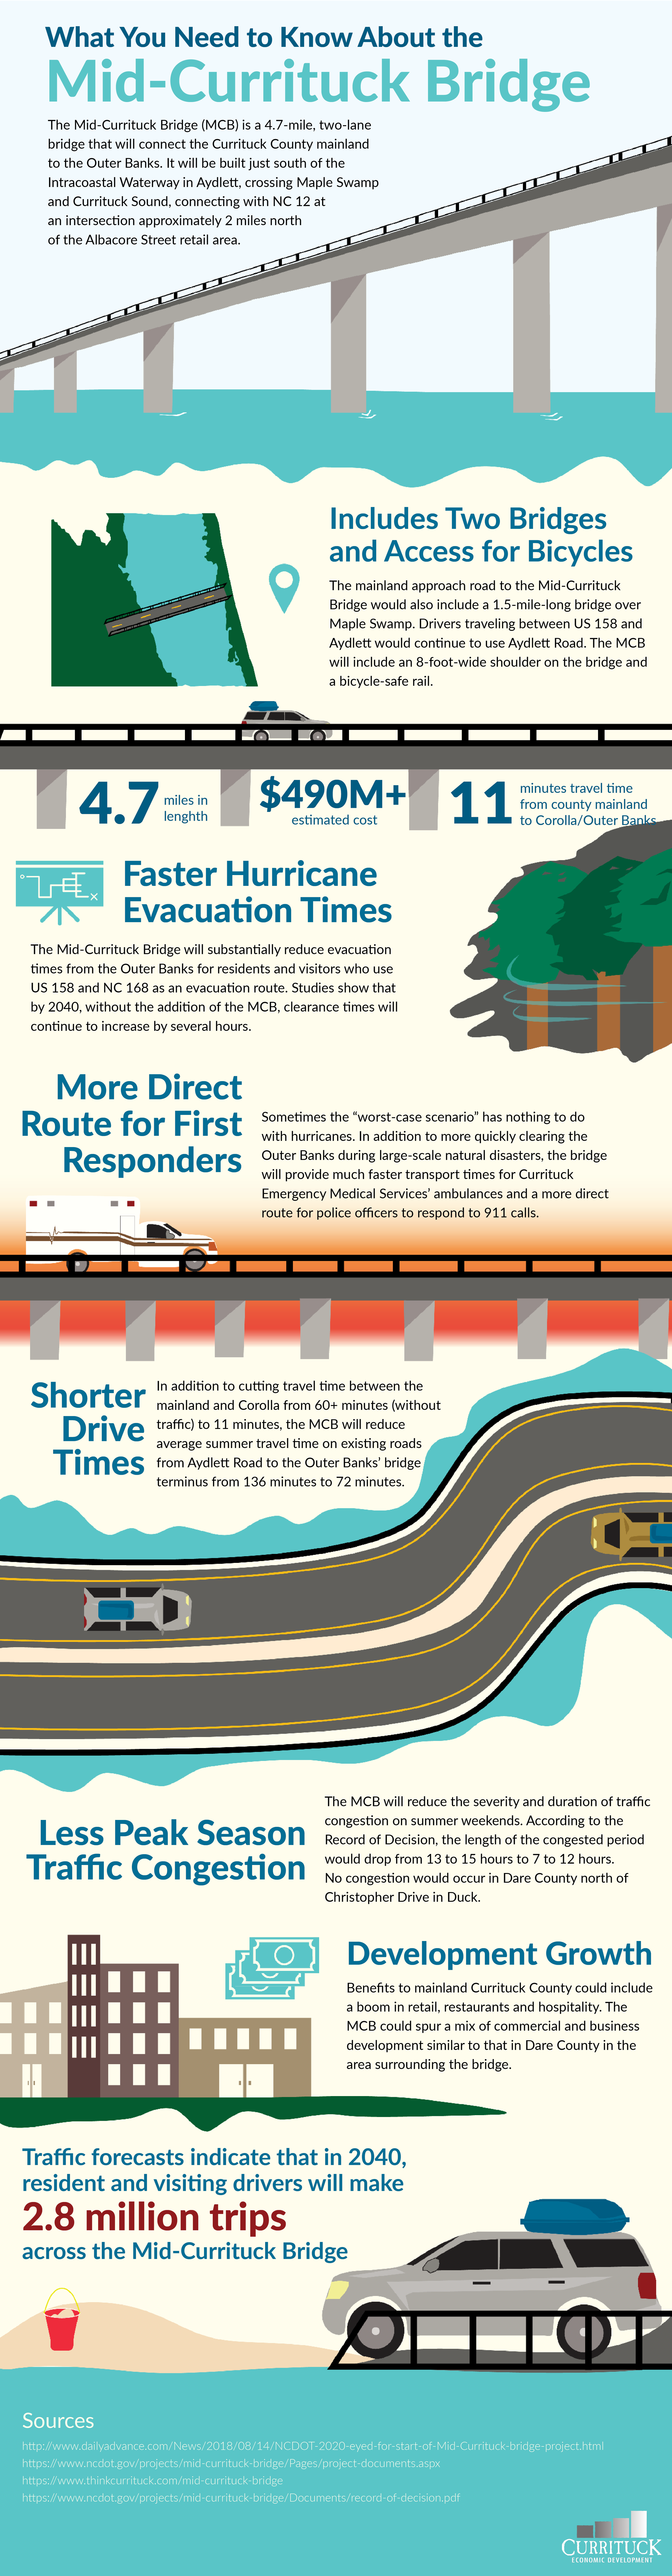 Mid-Currituck Bridge Infographic 2.2